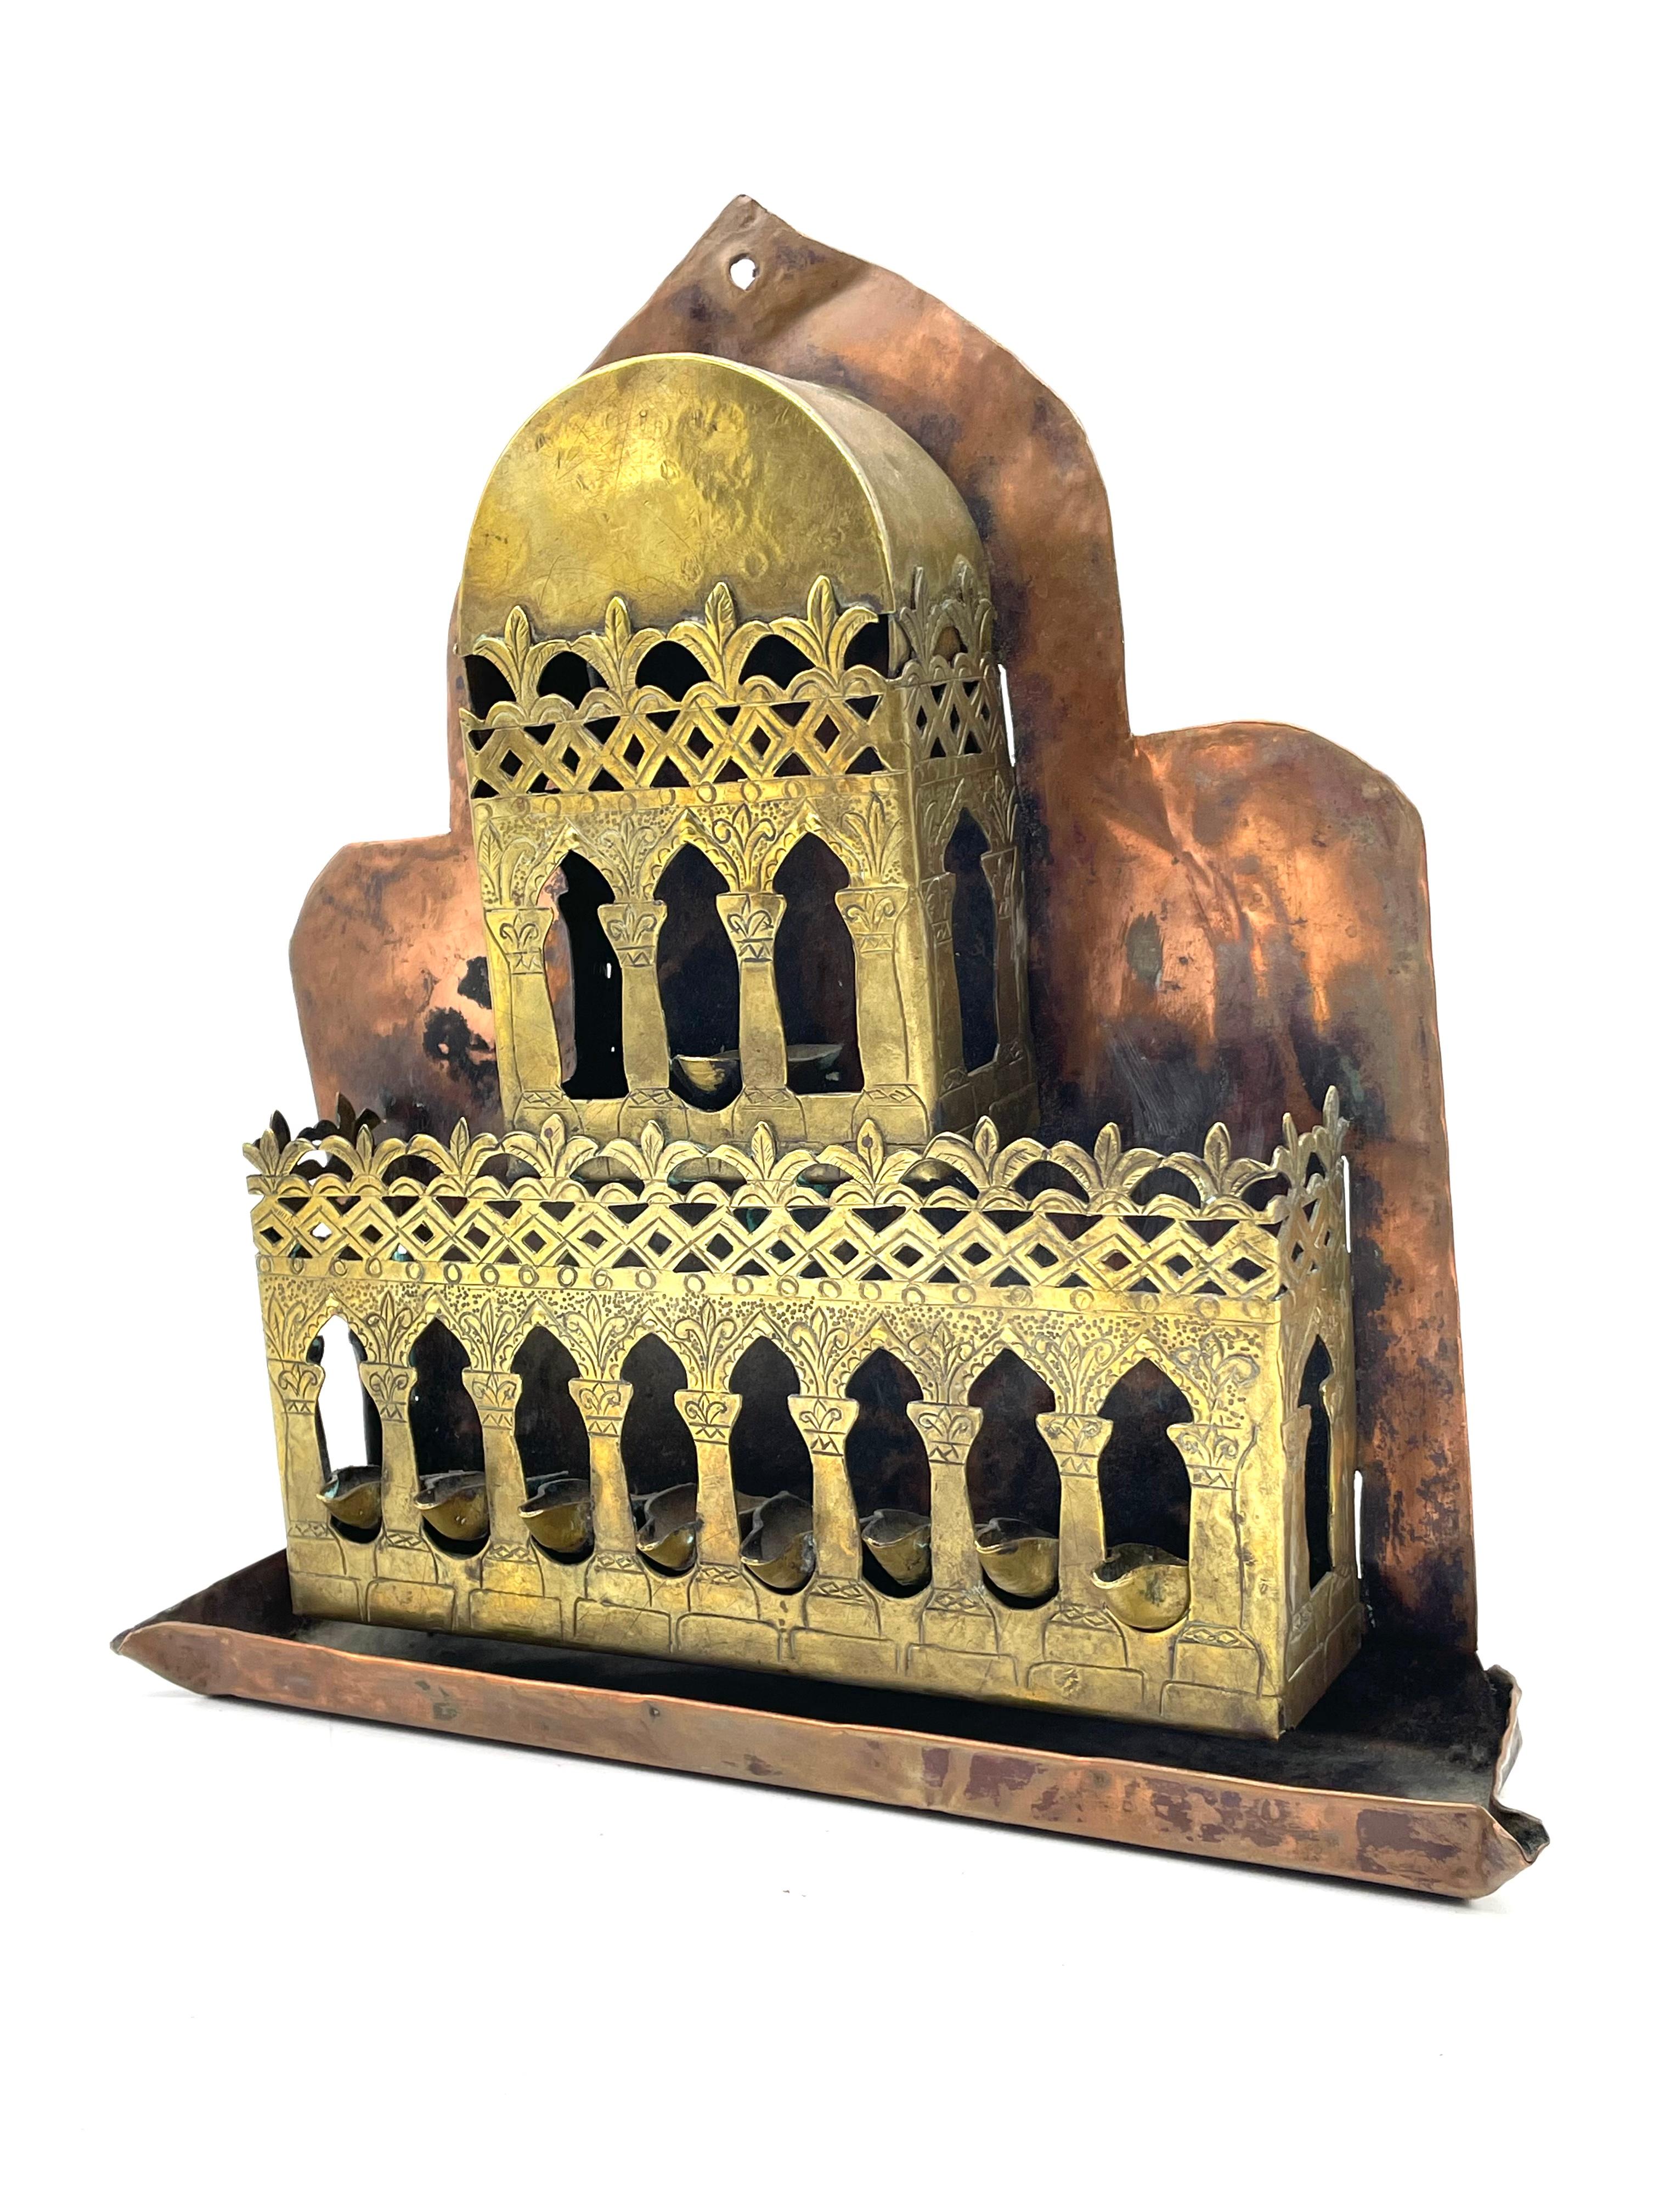 Chanukka-Lampe in Form eines Palastes, überragt von einer islamischen Mondsichel. Hergestellt in Laghouat, Algerien. 
Die Chanukka-Lampe besteht aus zwei Teilen: einem durchbrochenen und gravierten Messingteil in Form eines Palastes und einem